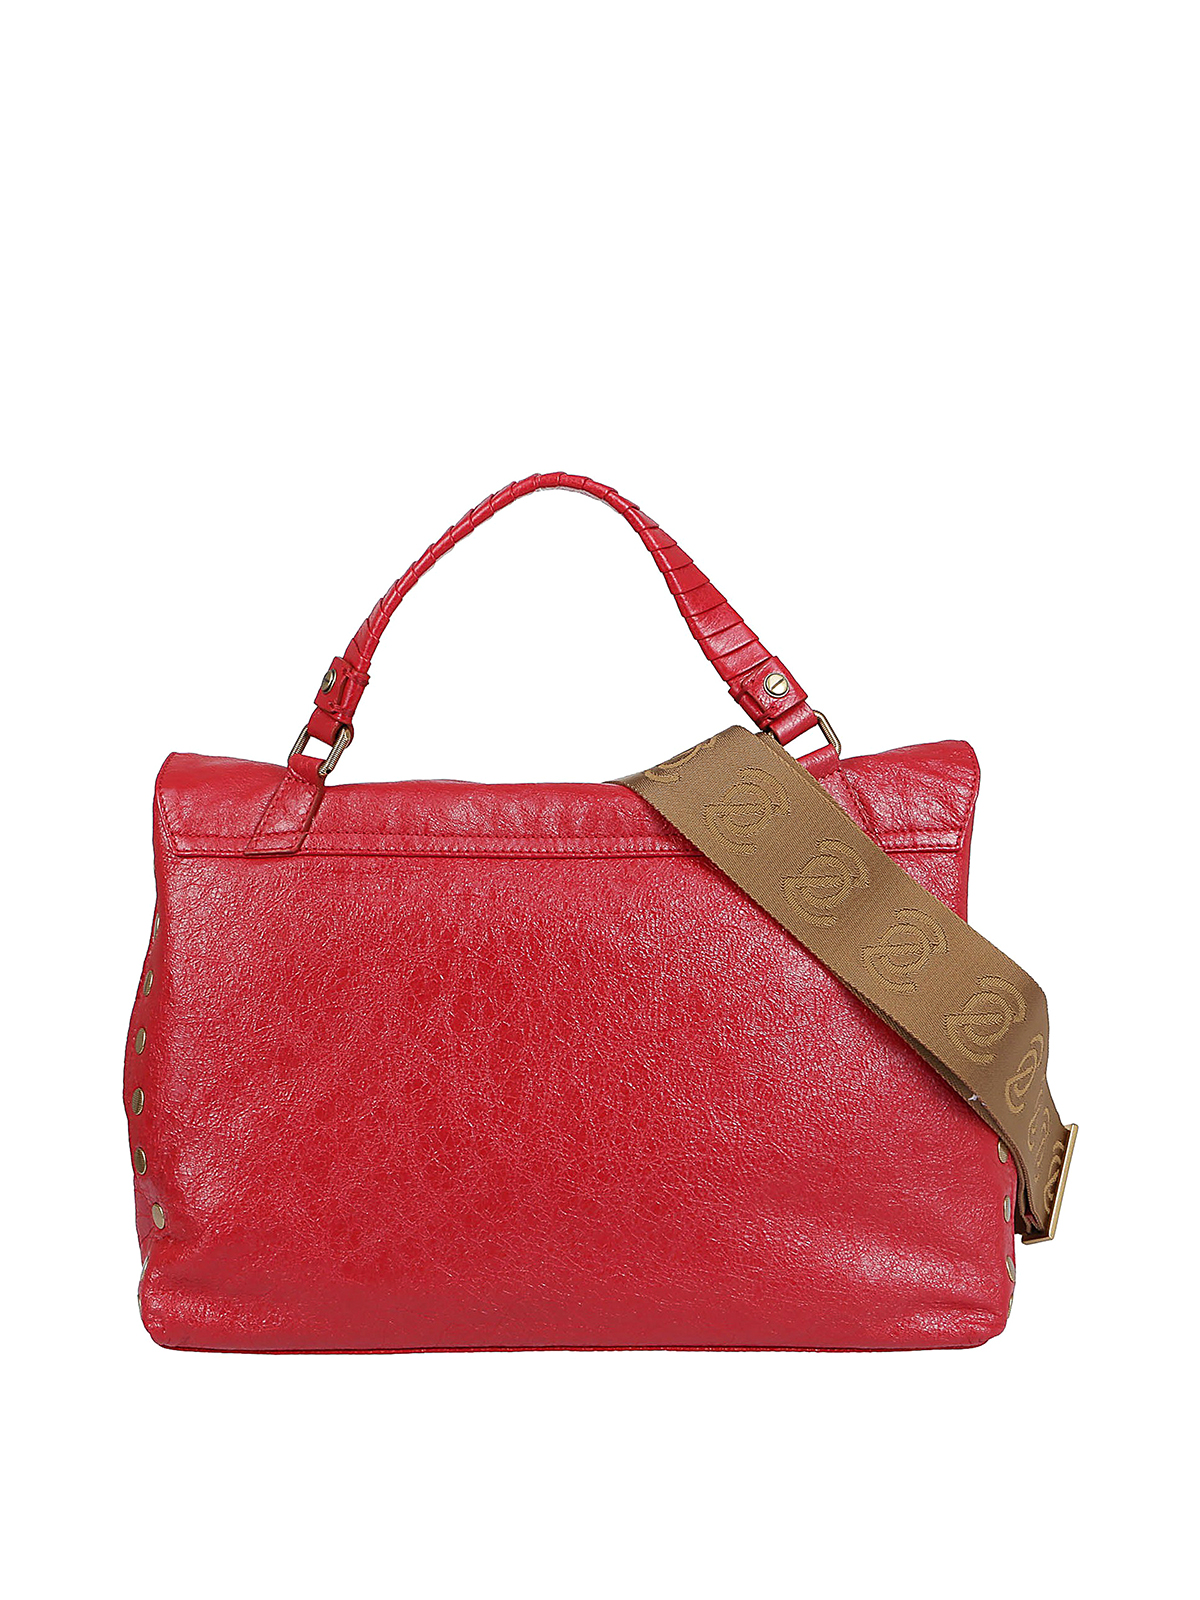 Zanellato small Postina leather tote bag - Red